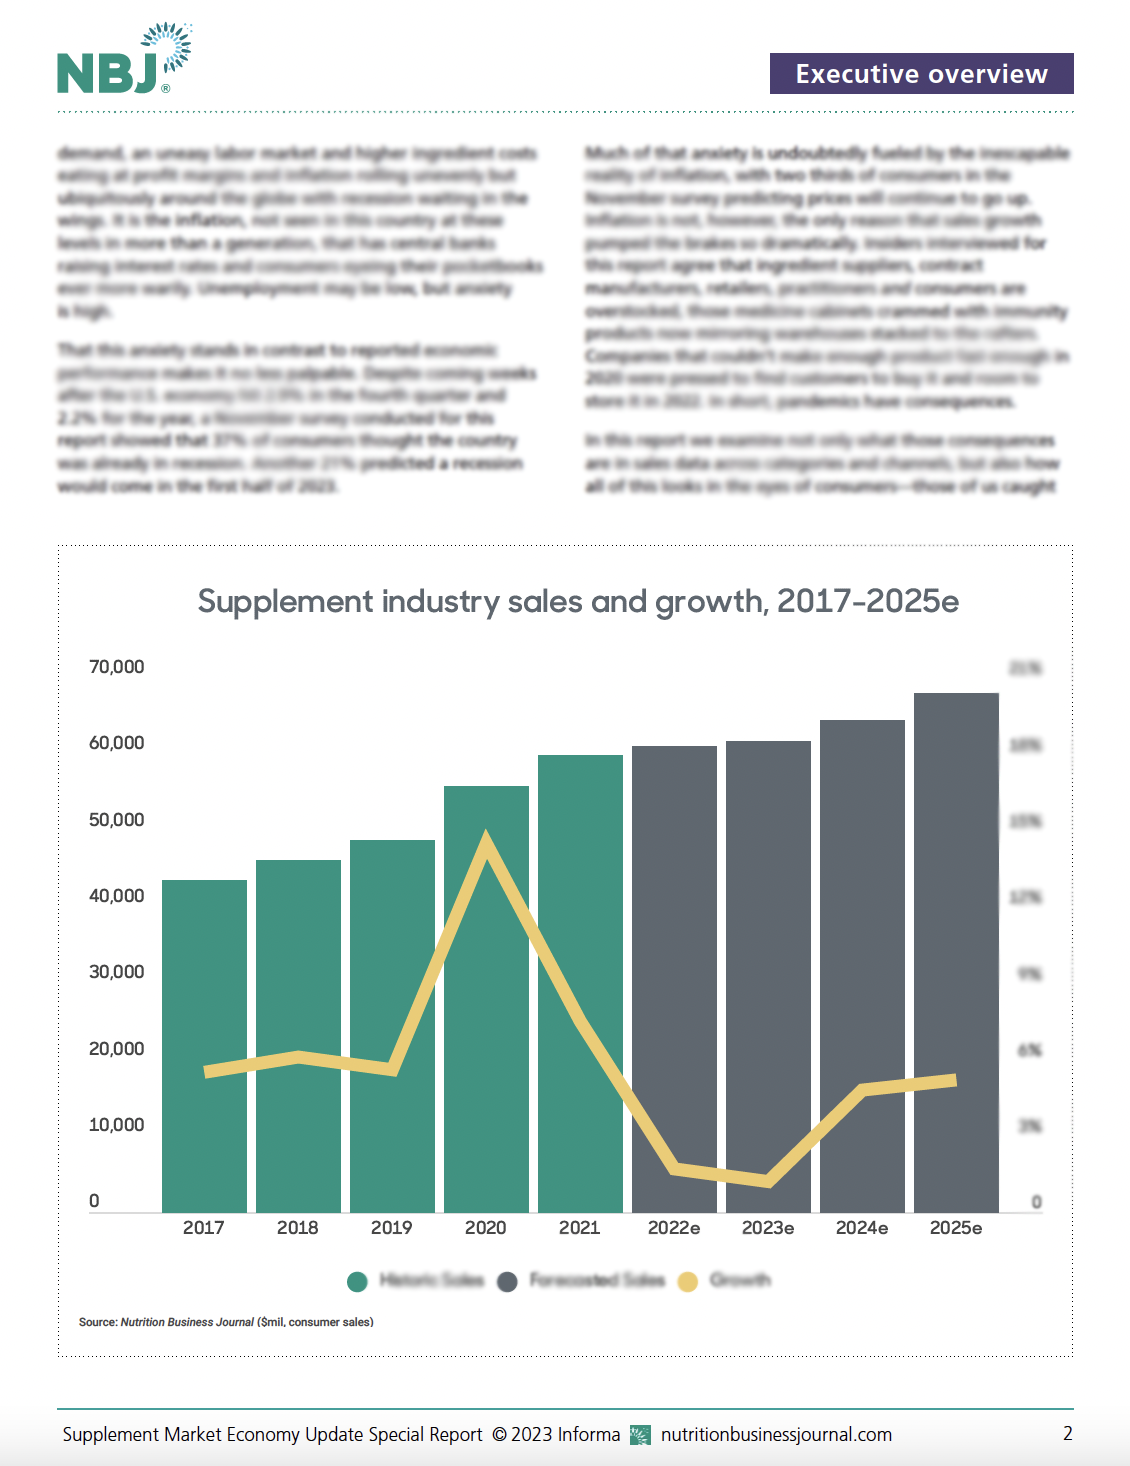 Special Report: Supplement Market Economy Update 2023